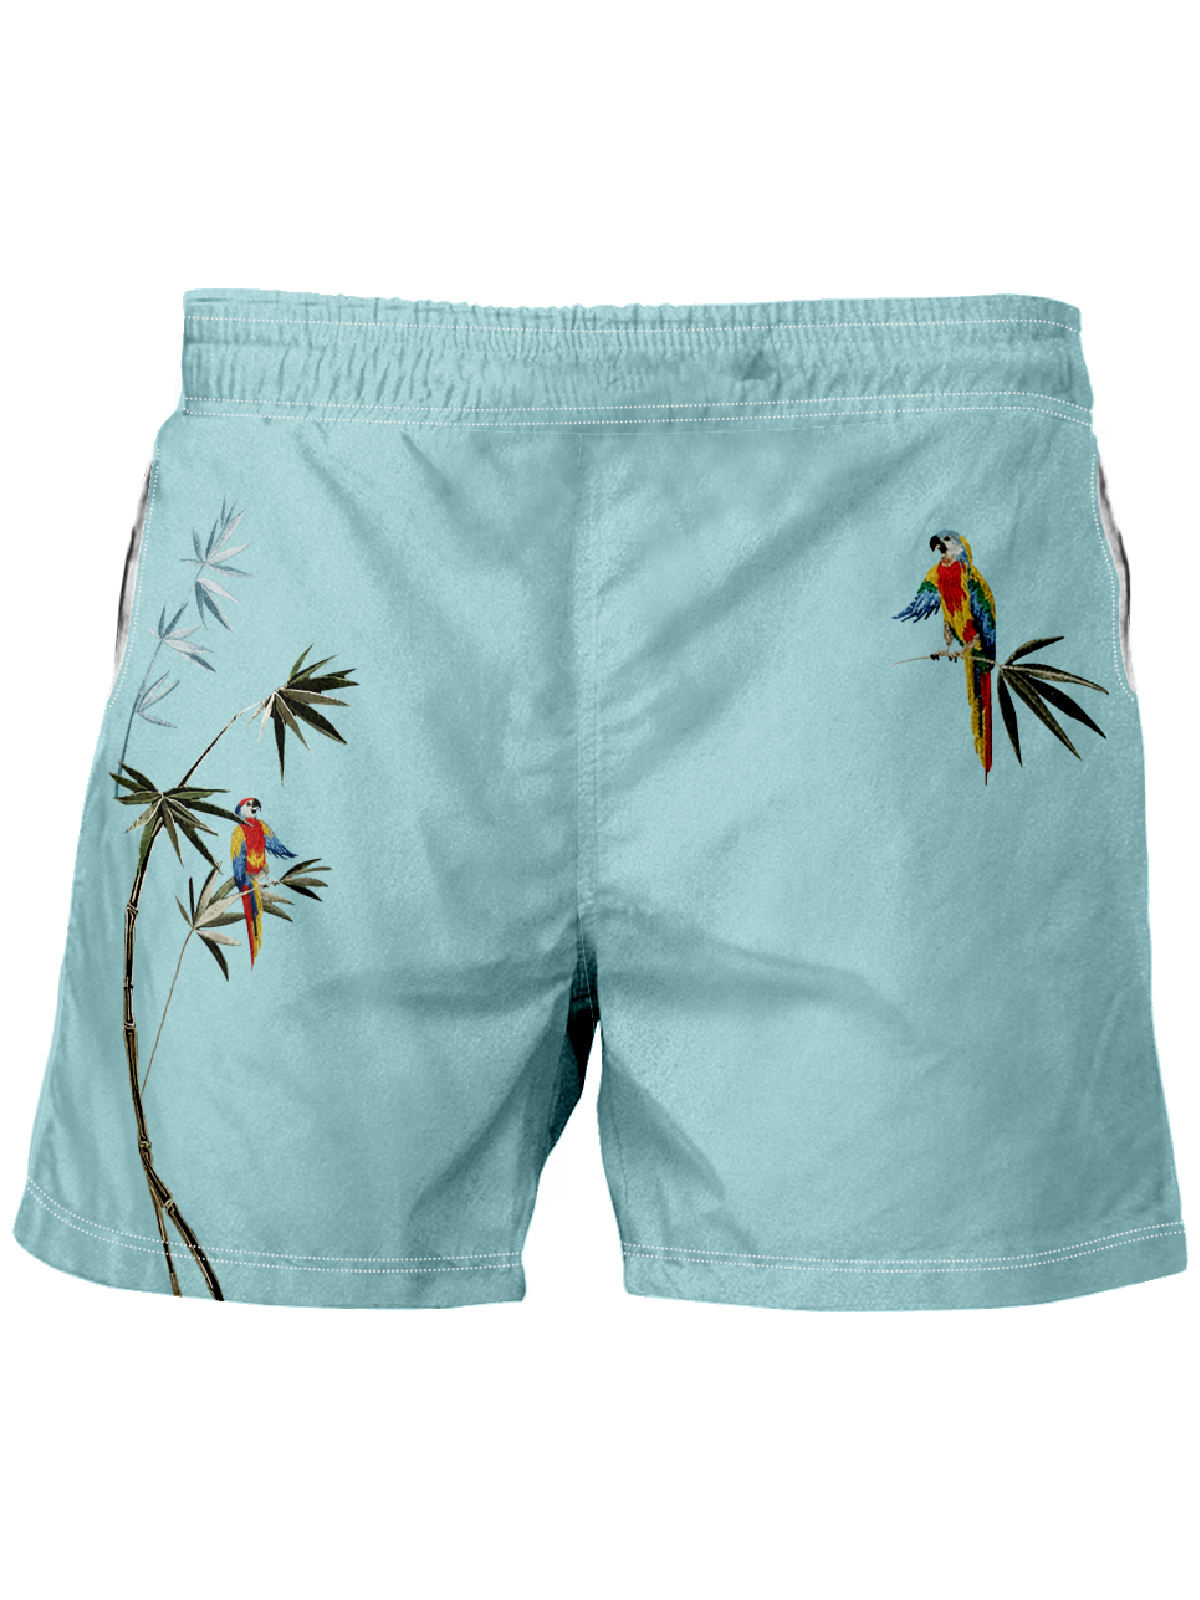 Men's Hawaiian Bamboo Parrot Print Casual Shorts-Garamode